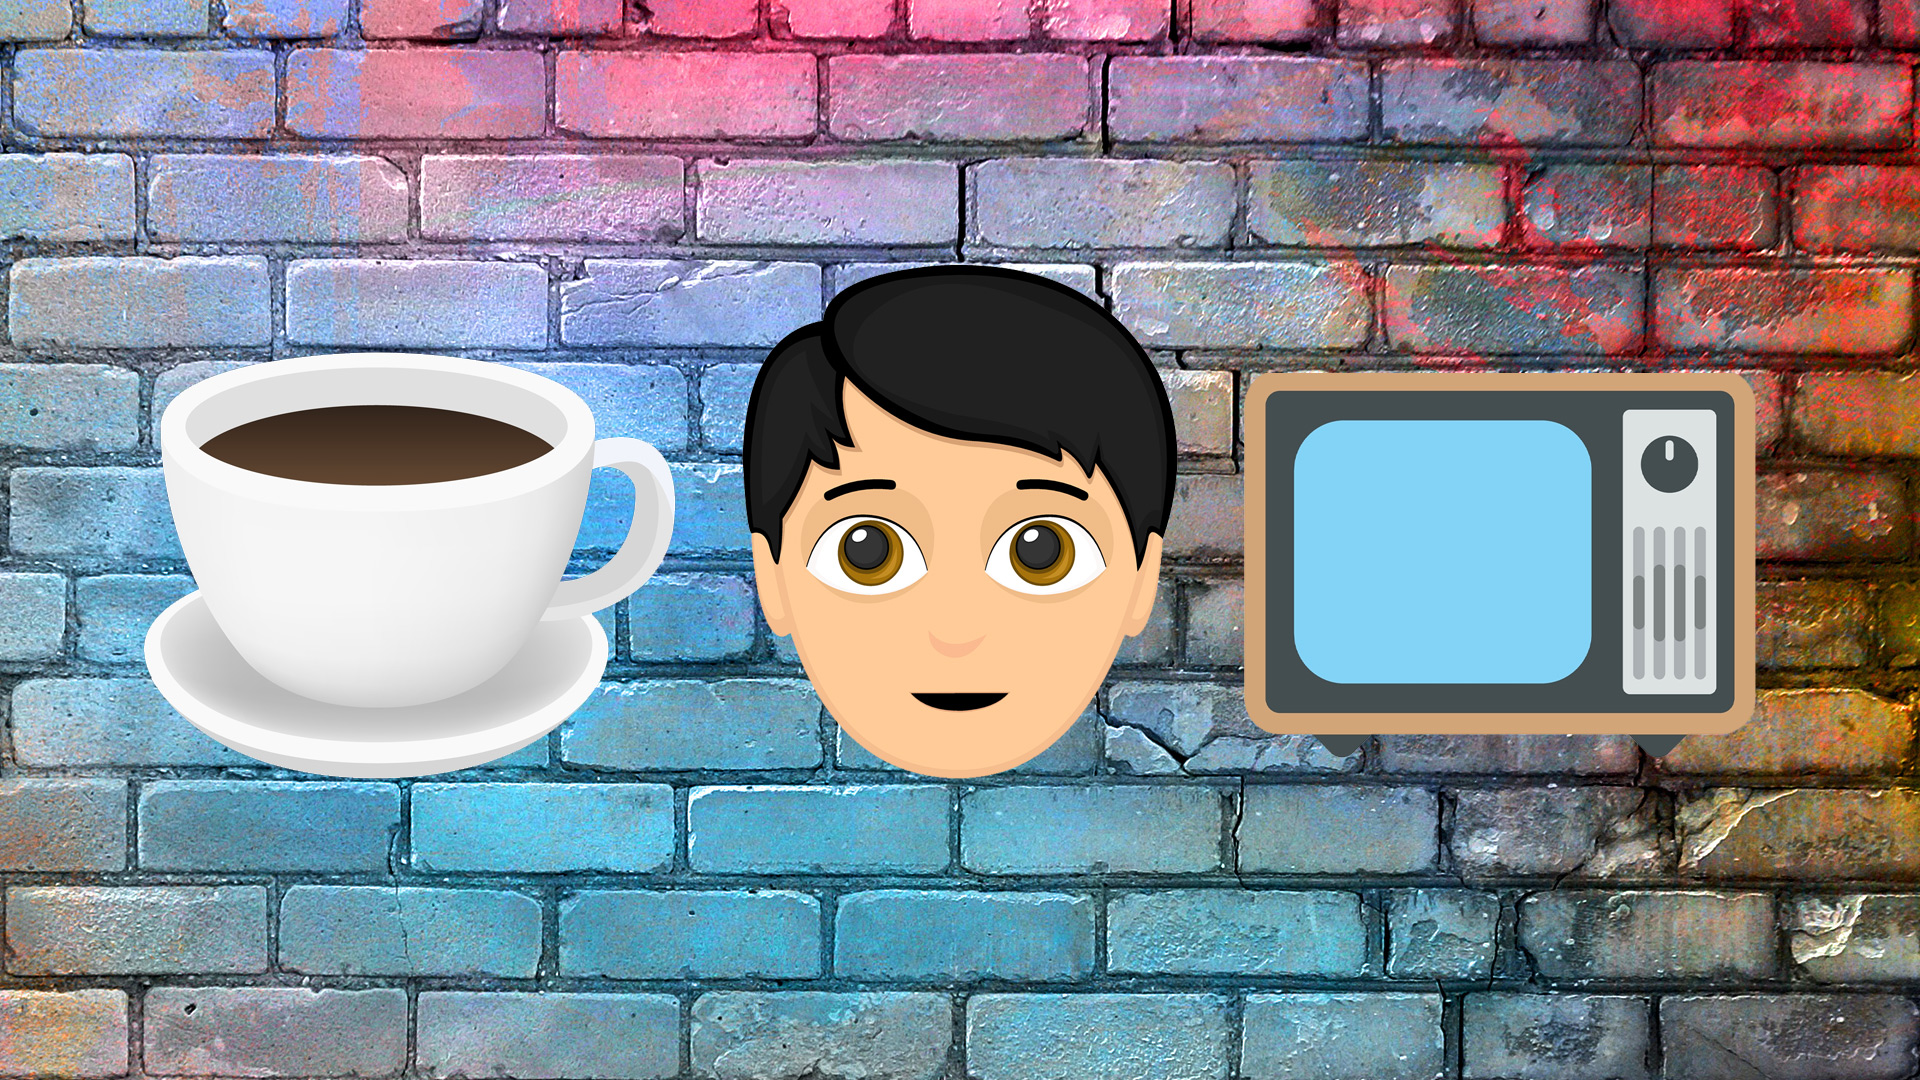 Emojis: coffee, human face and TV screen